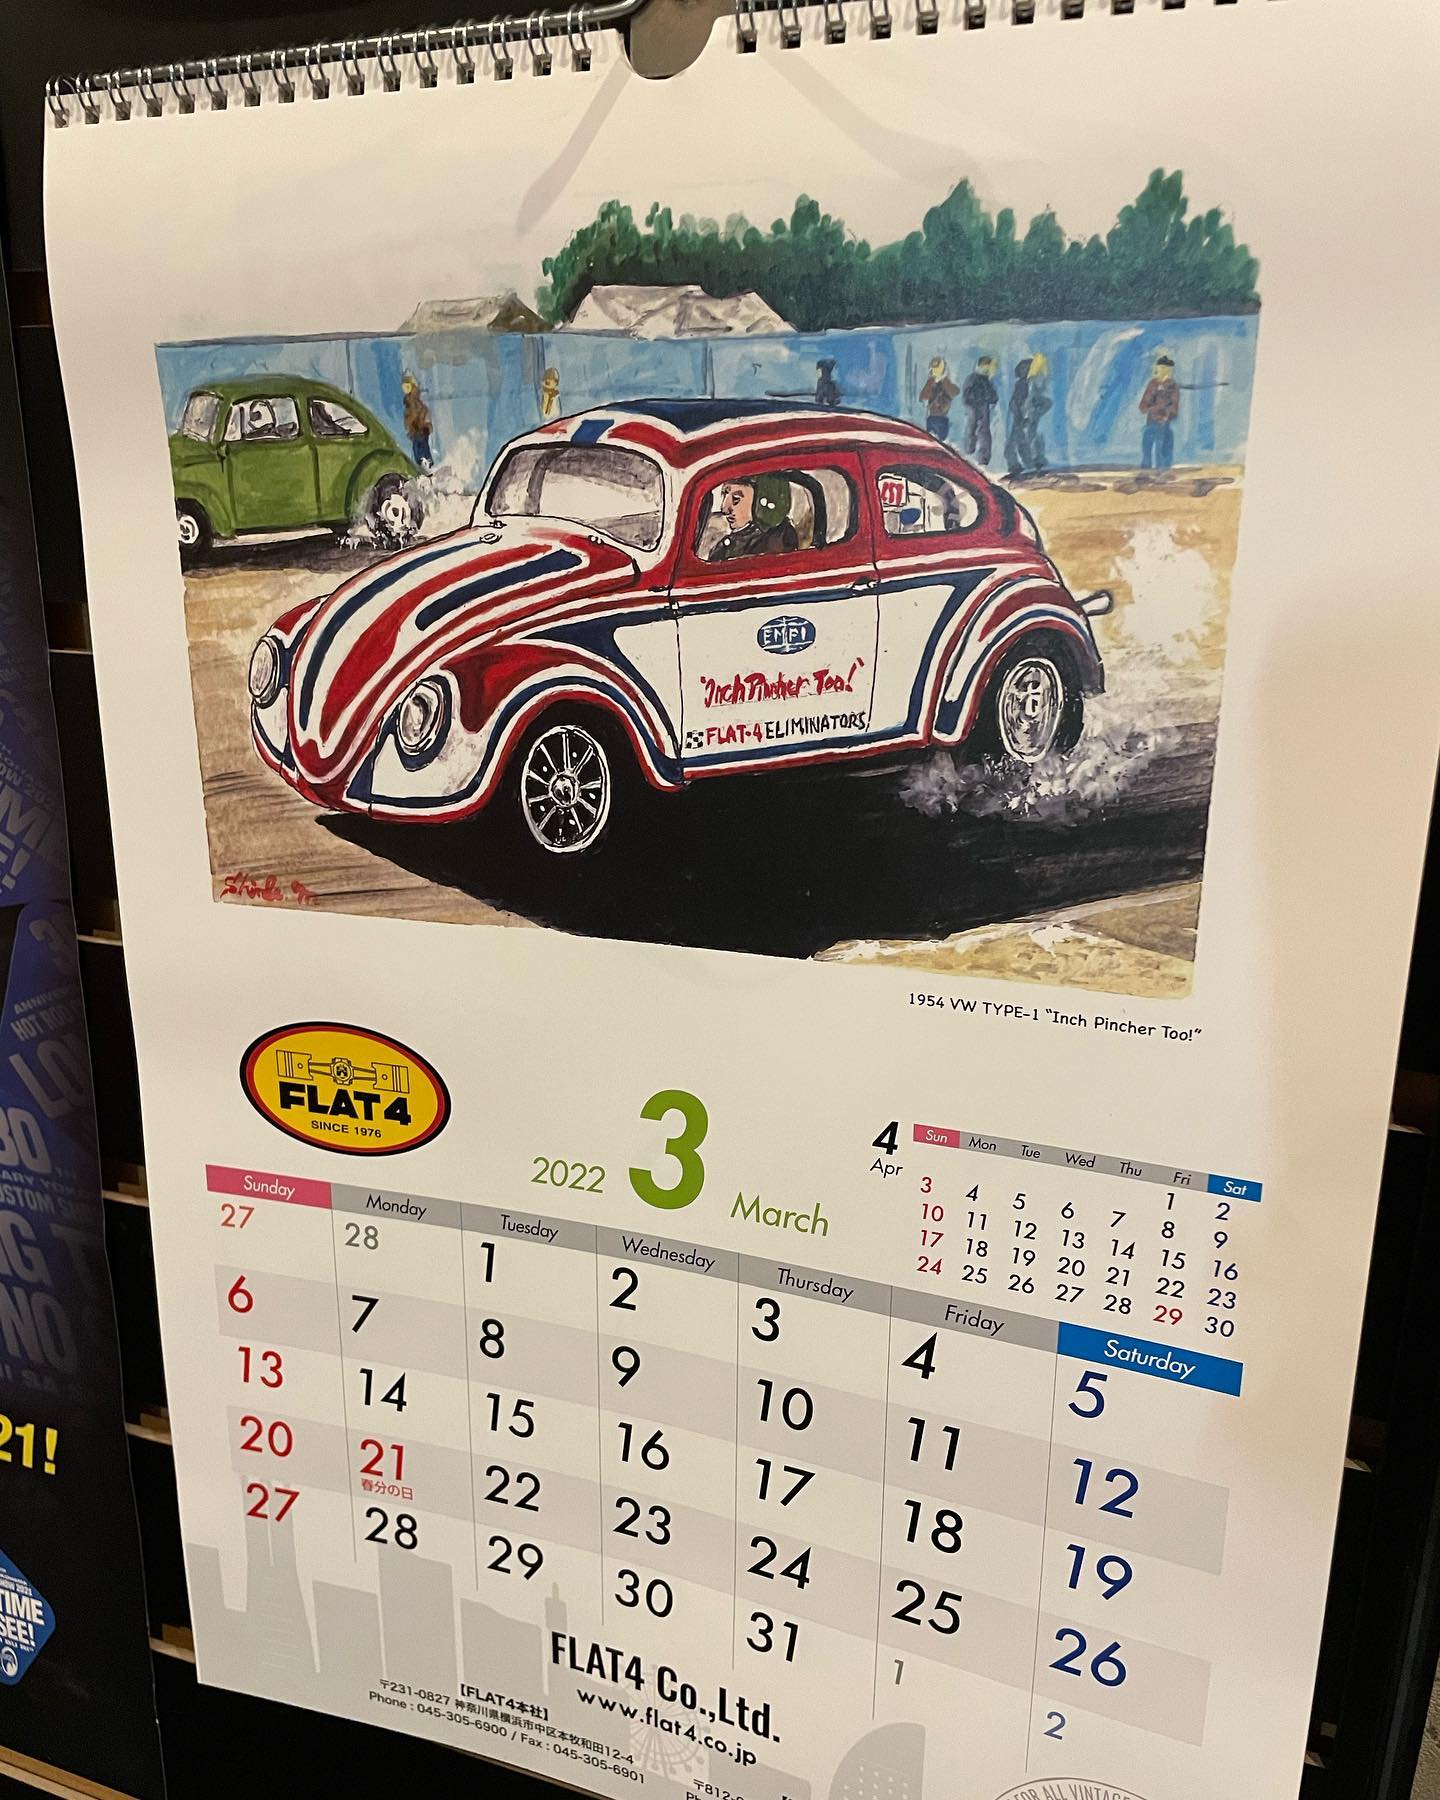 3月ももう終わりですね@flat4_official カレンダーの#inchpinchertoo も残すところあと1日…#vw #empi #flat4 #inchpinchertoo #inchpincher #volkswagen #千葉 #千葉北 #dmc #鈑金塗装